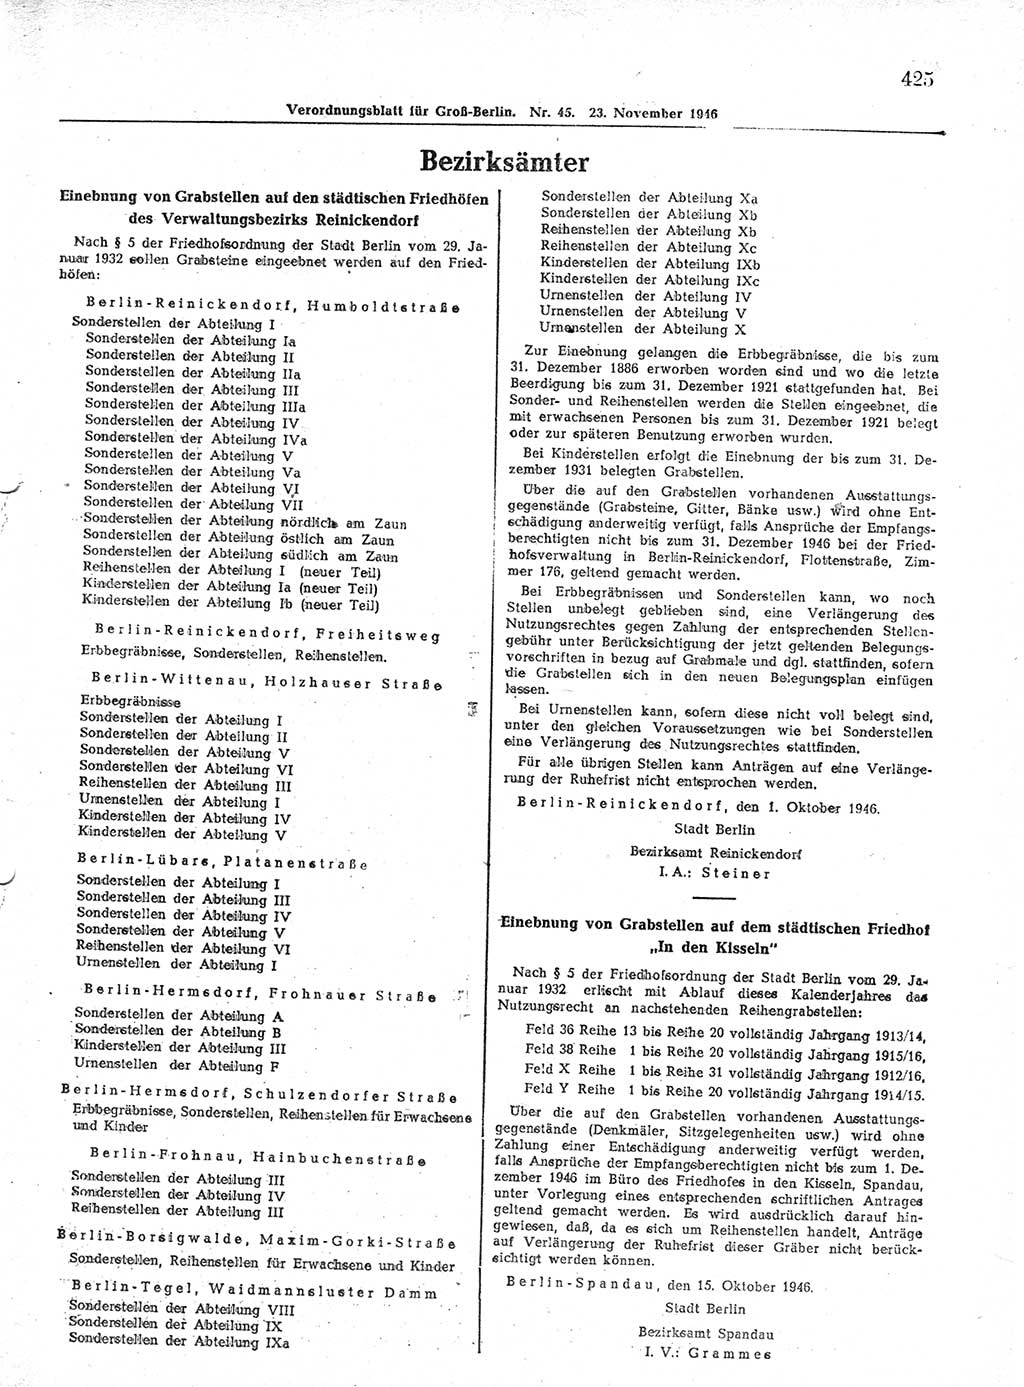 Verordnungsblatt (VOBl.) der Stadt Berlin, für Groß-Berlin 1946, Seite 425 (VOBl. Bln. 1946, S. 425)